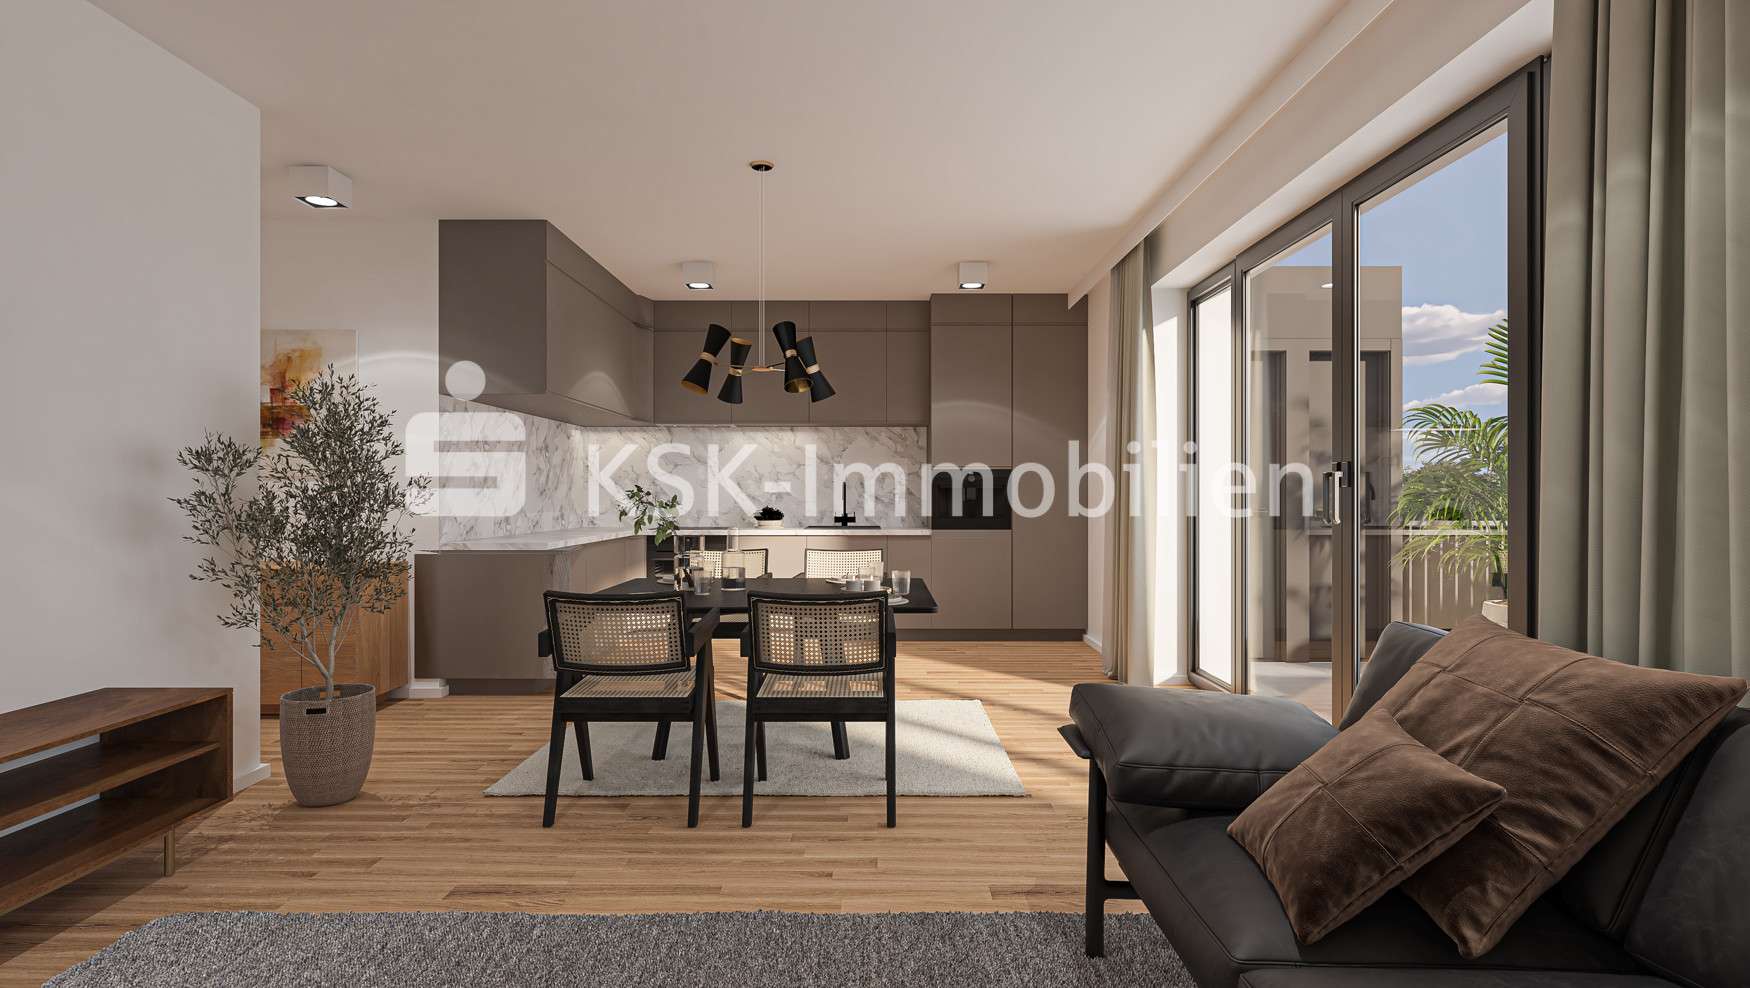 Küche-Essen-Wohnen - Etagenwohnung in 40699 Erkrath mit 88m² kaufen